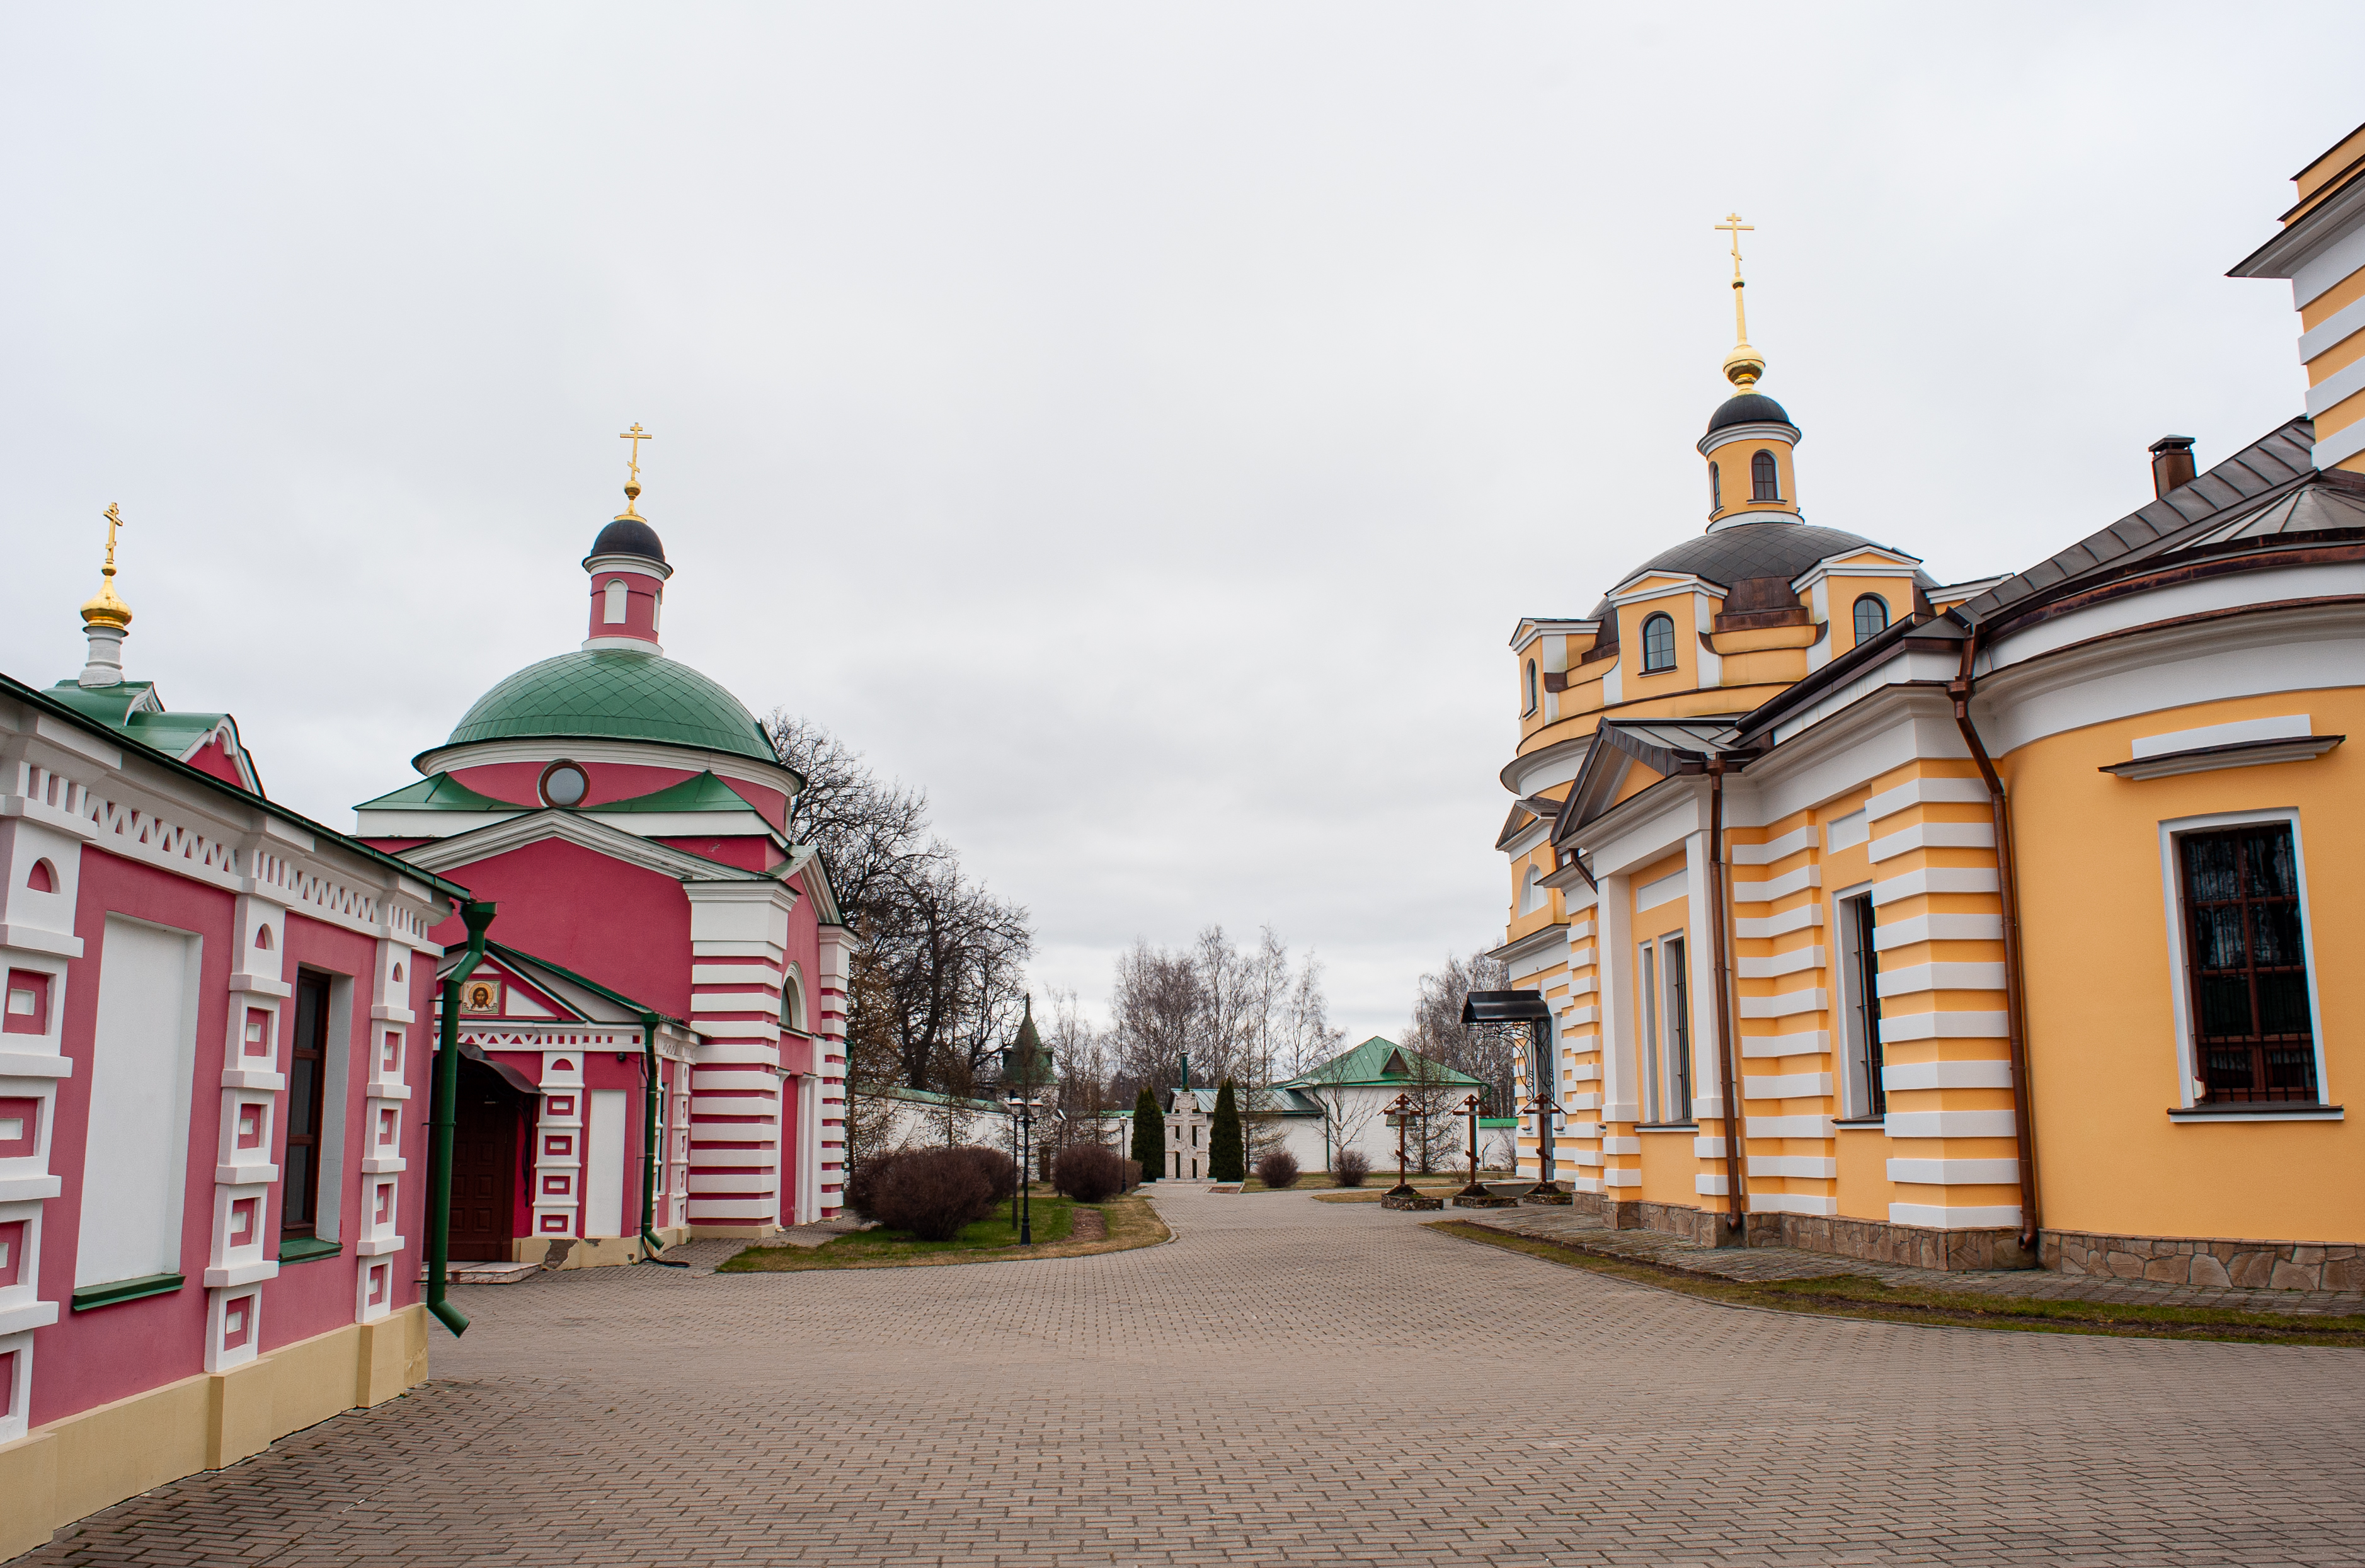 Борисоглебским монастырь назван в честь русских князей Бориса и Глеба